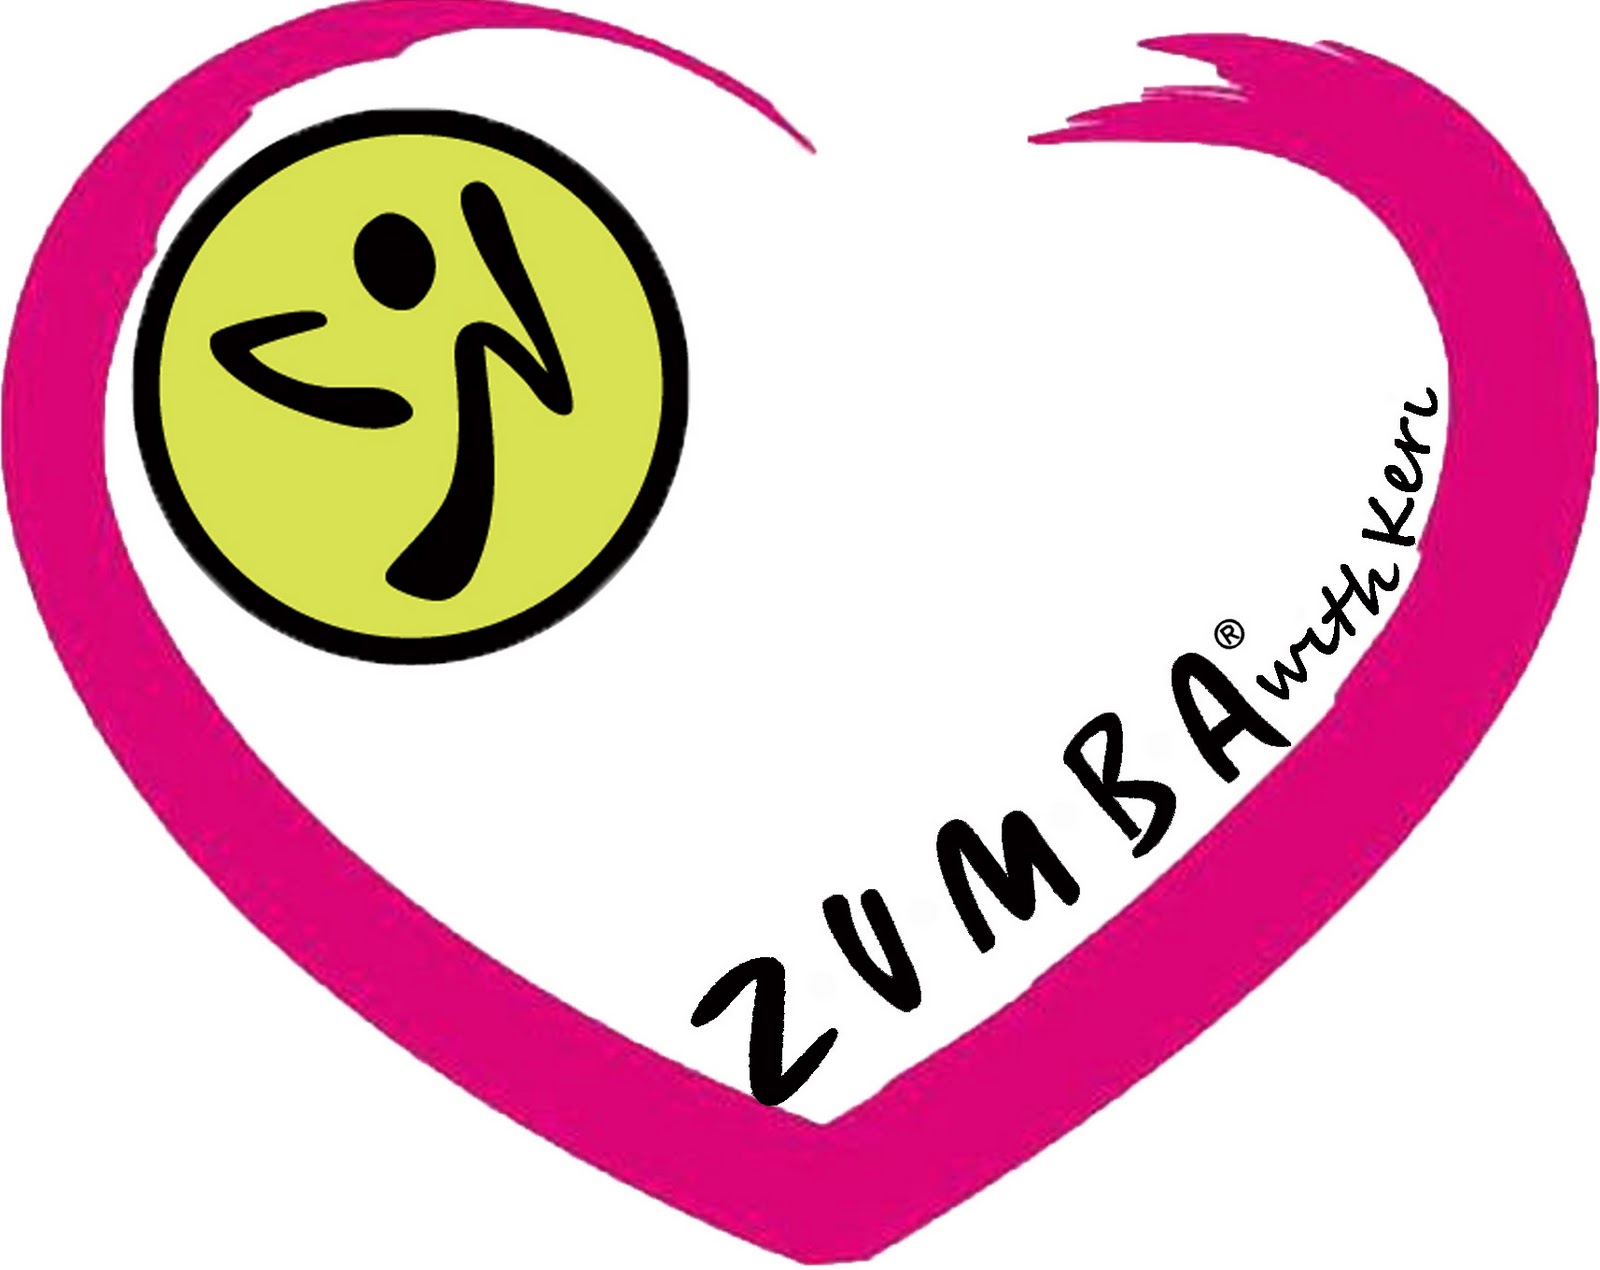 zumba logo clip art - photo #48